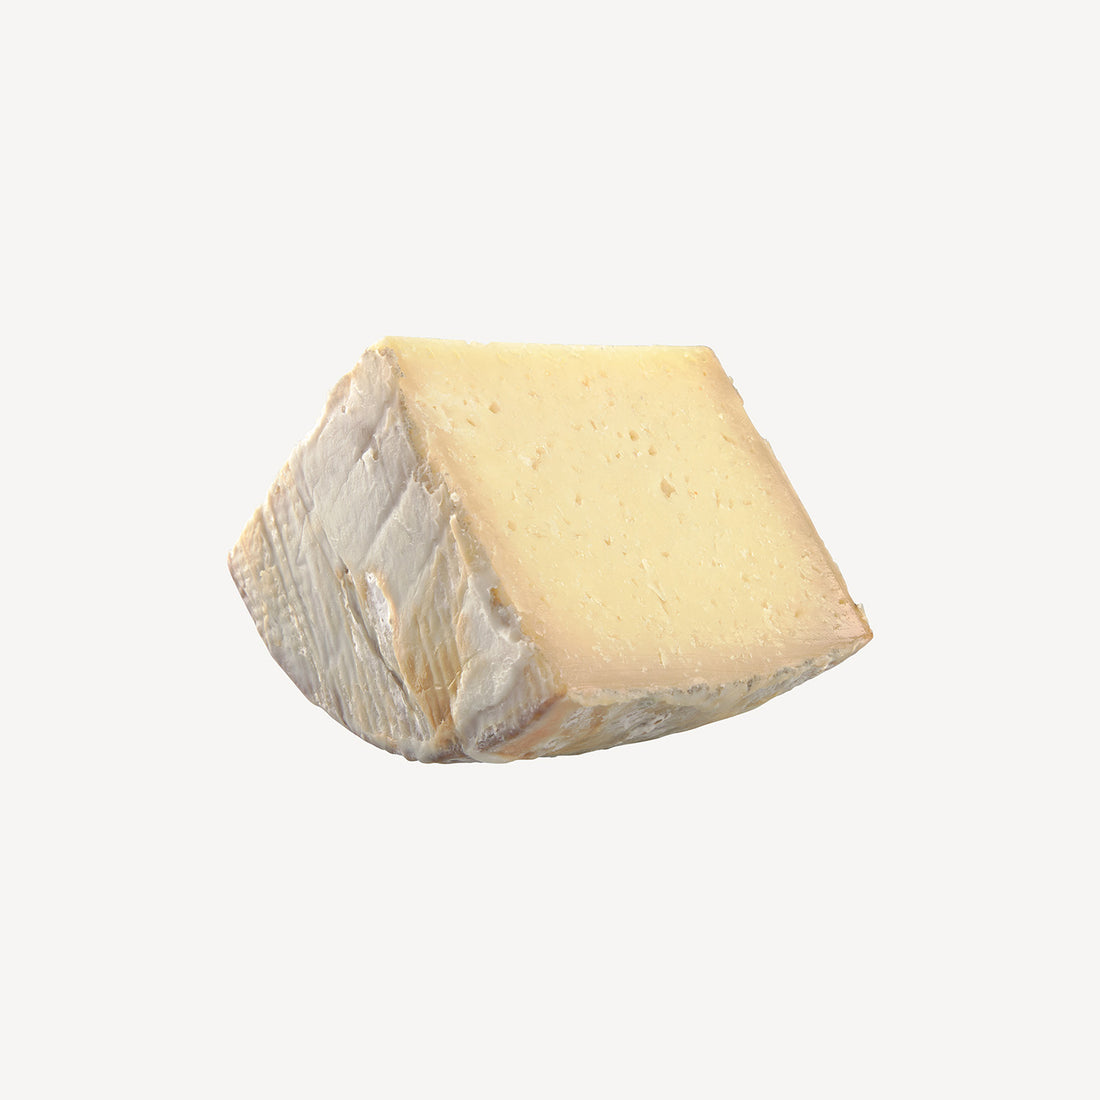 La cuña de queso artesano manchego envejecido en manteca, un preludio visual a un sabor rico y textura suave, marcados por la tradición.